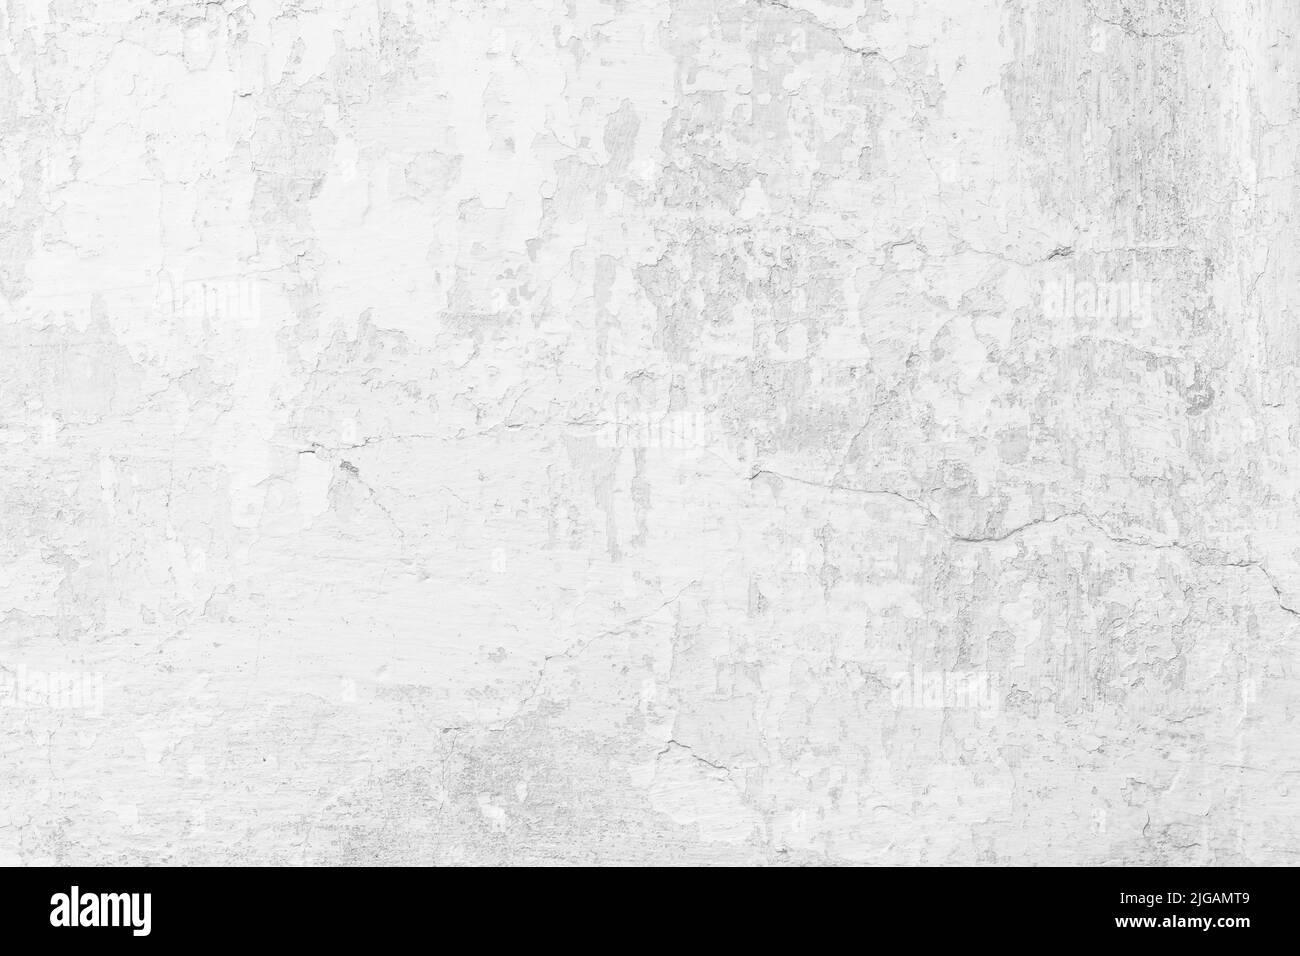 Texture beton bianco, sfondi in calcestruzzo grigio chiaro, parete in cemento. Stucco, intonaco. Spazio vuoto. Design di sfondo. Carta da parati grunge naturale, noi Foto Stock